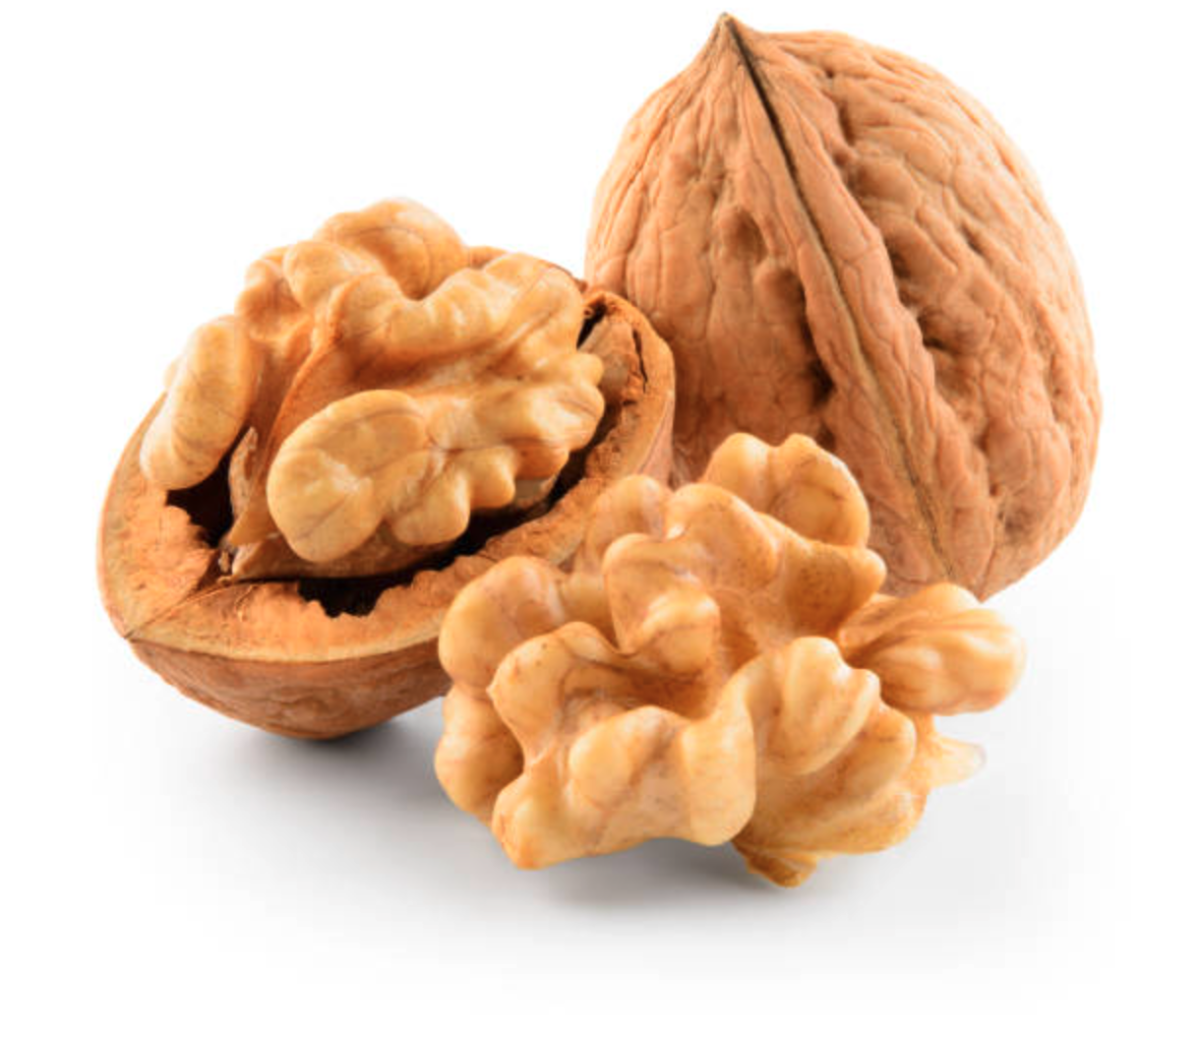 A walnut fits the proper description of a nut.